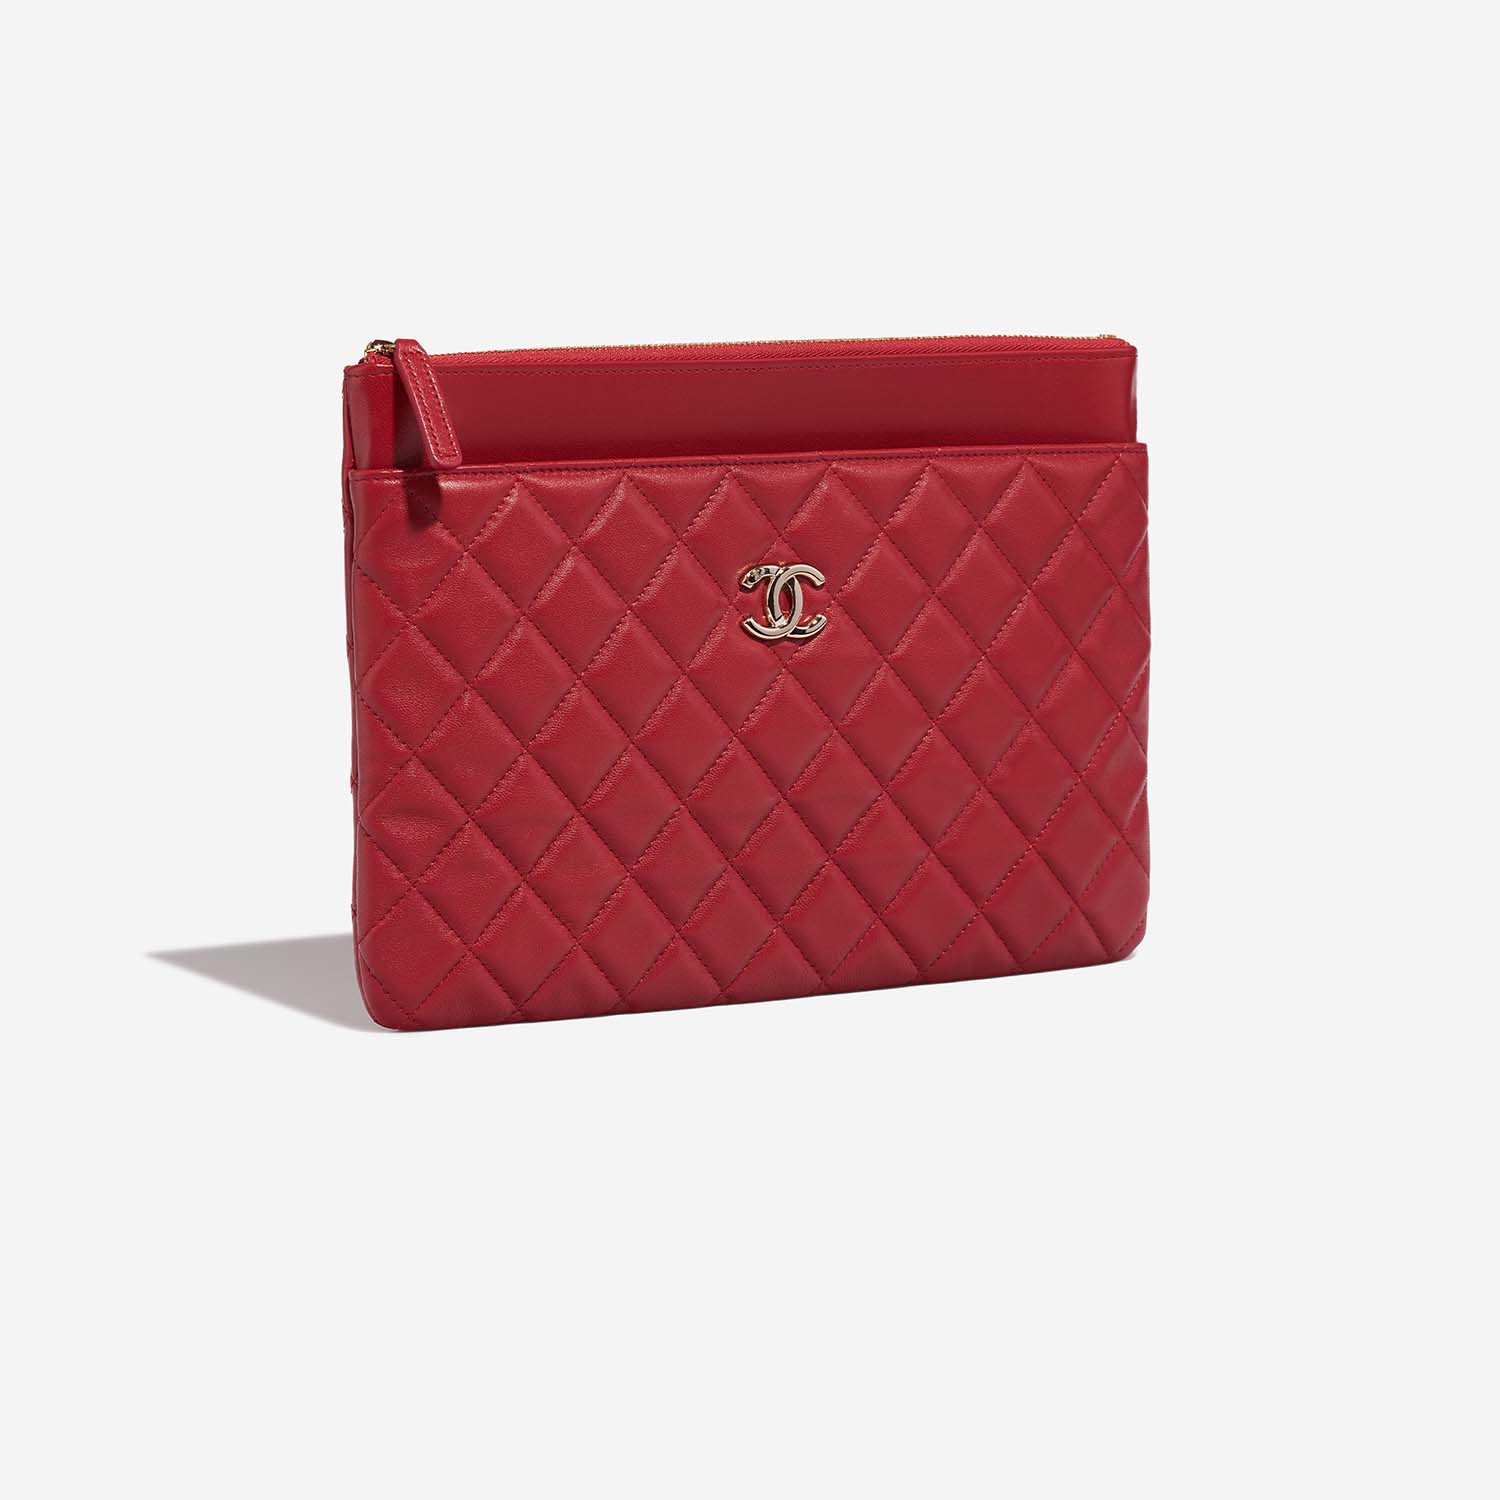 Chanel Timeless Clutch Red Side Front | Verkaufen Sie Ihre Designer-Tasche auf Saclab.com